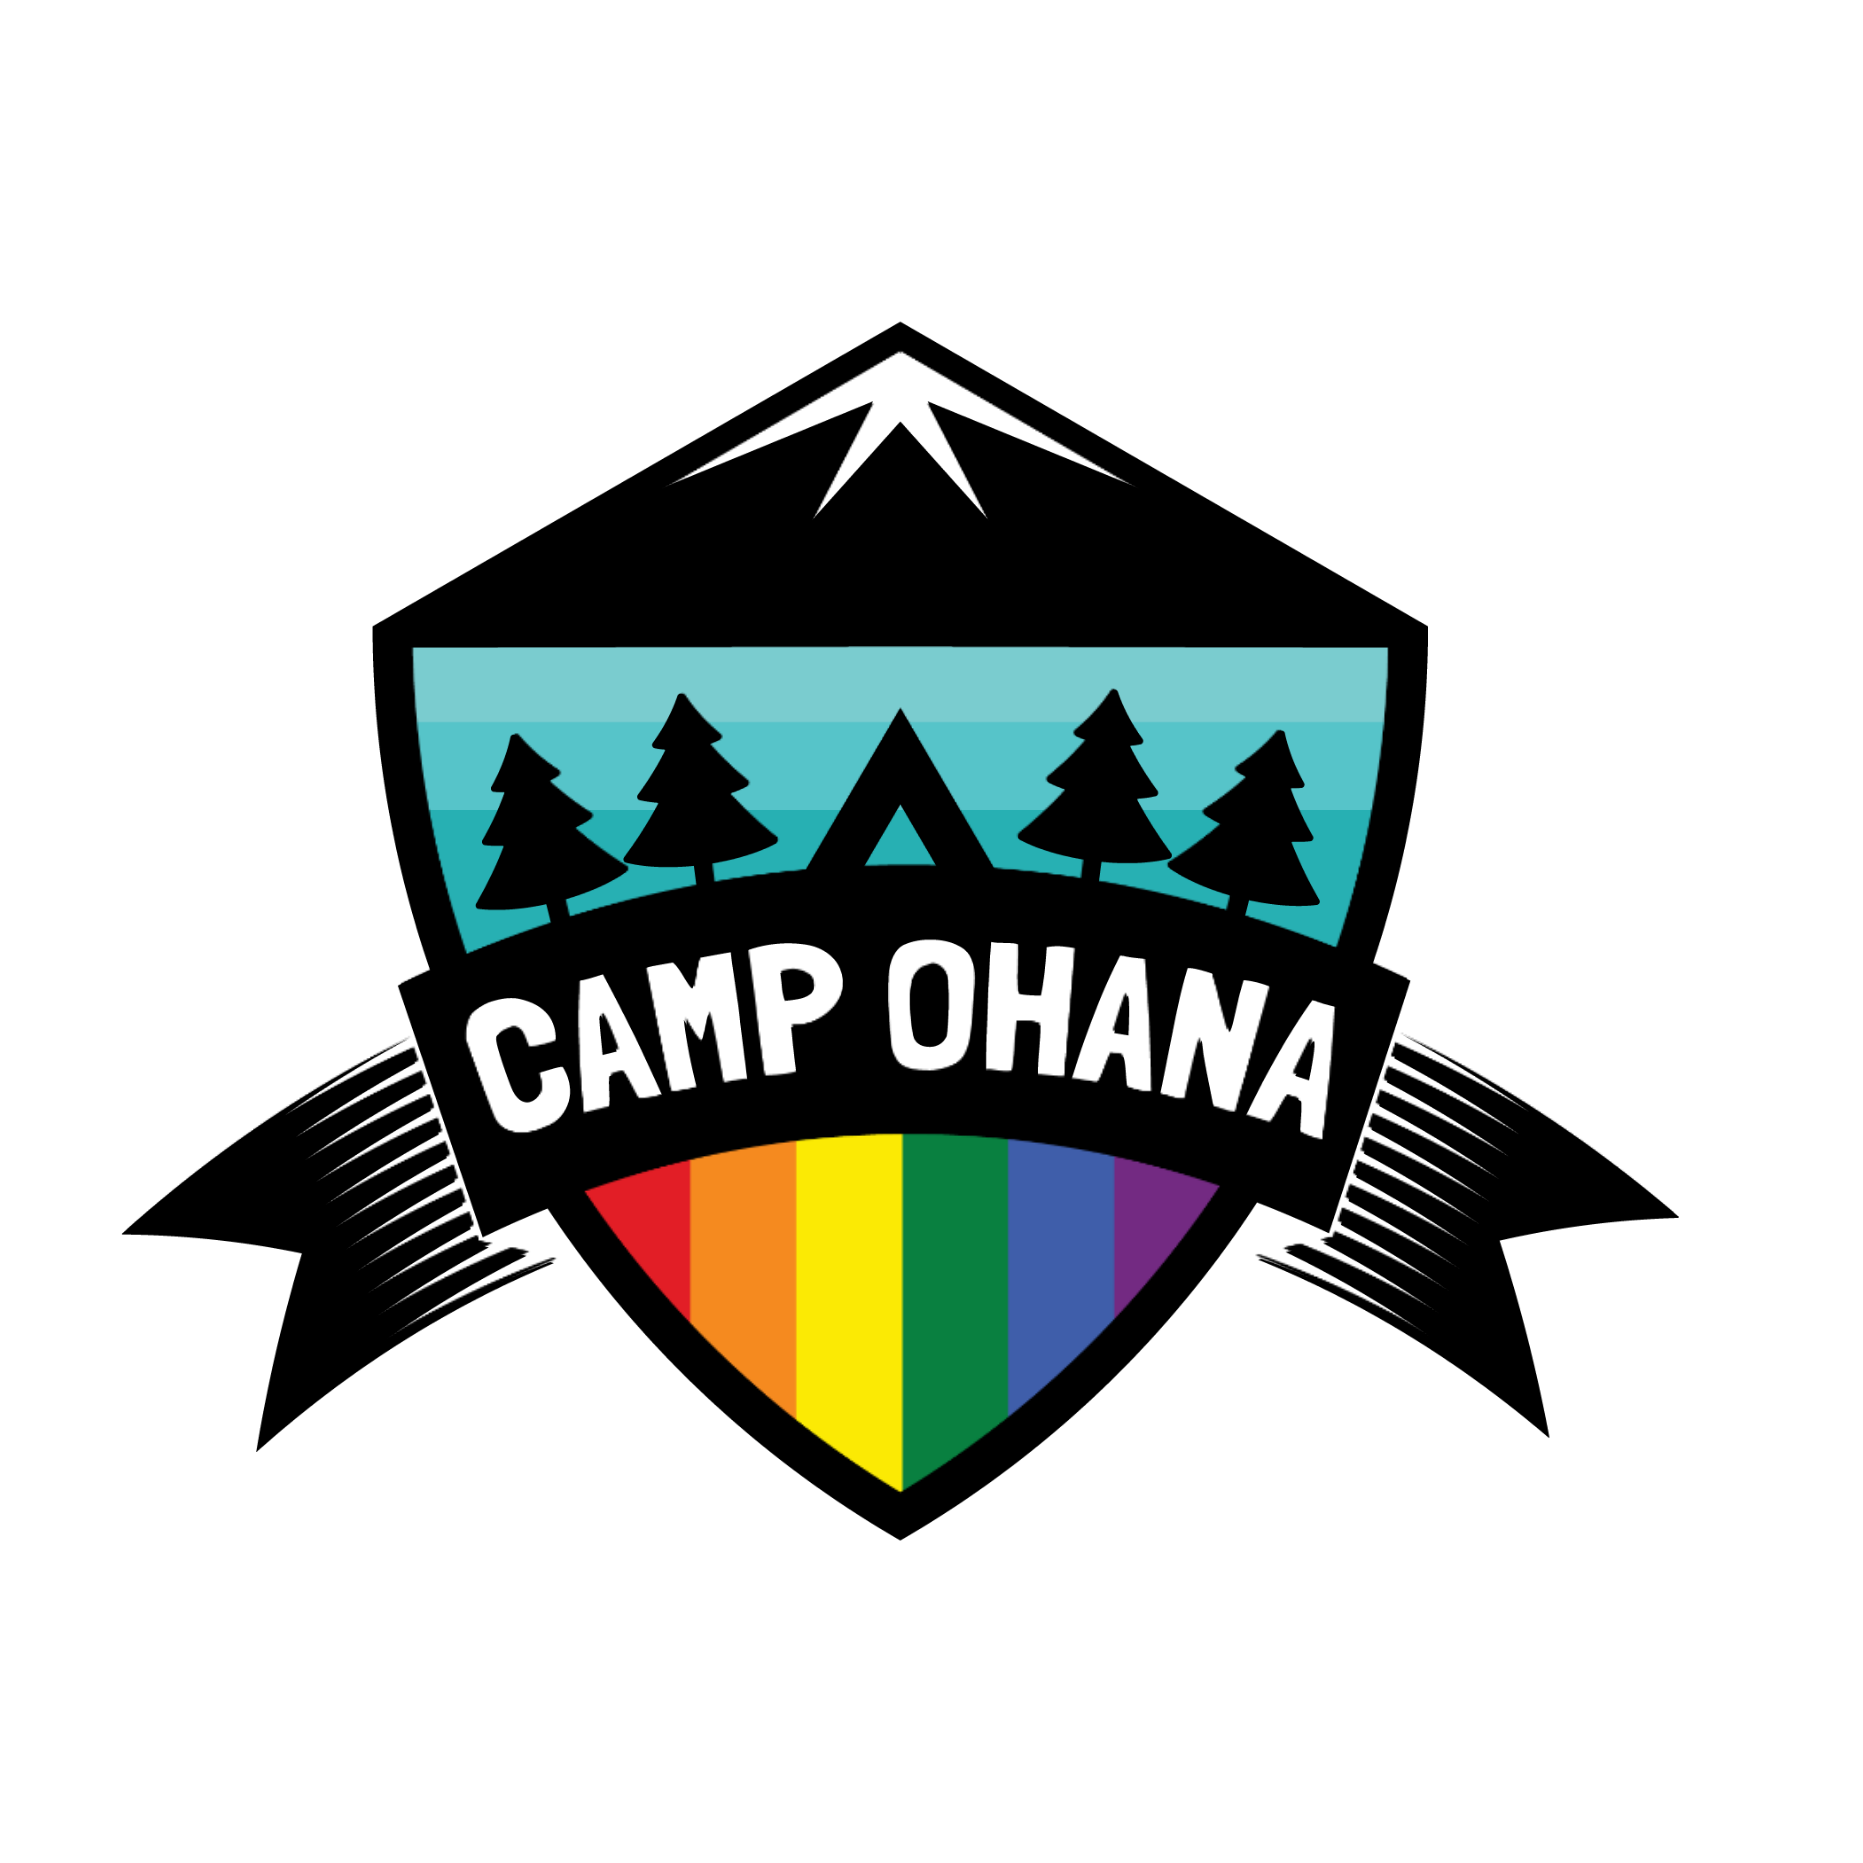 Camp Ohana